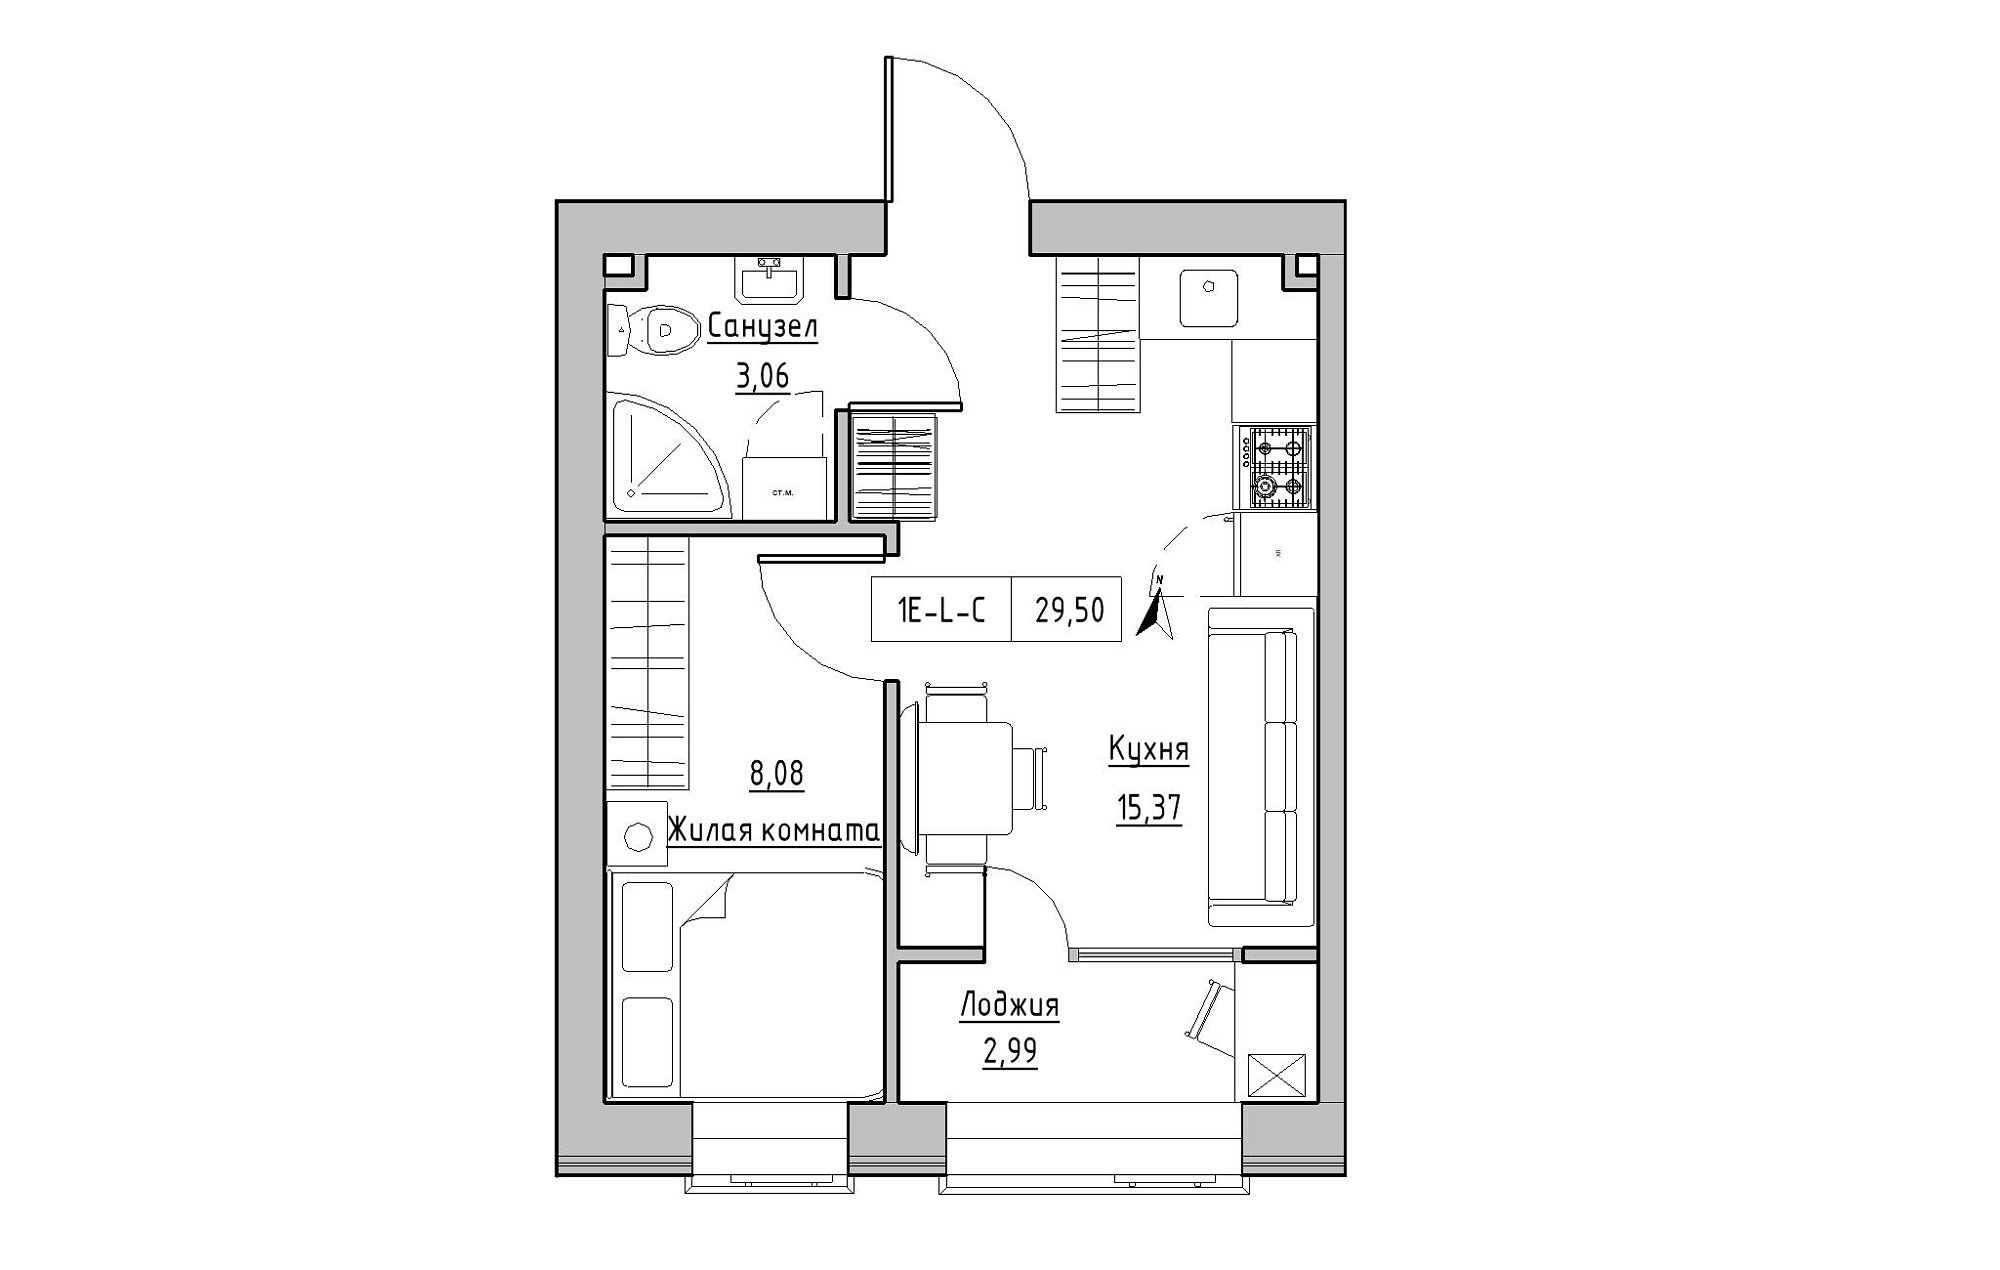 Планировка 1-к квартира площей 29.5м2, KS-019-01/0010.